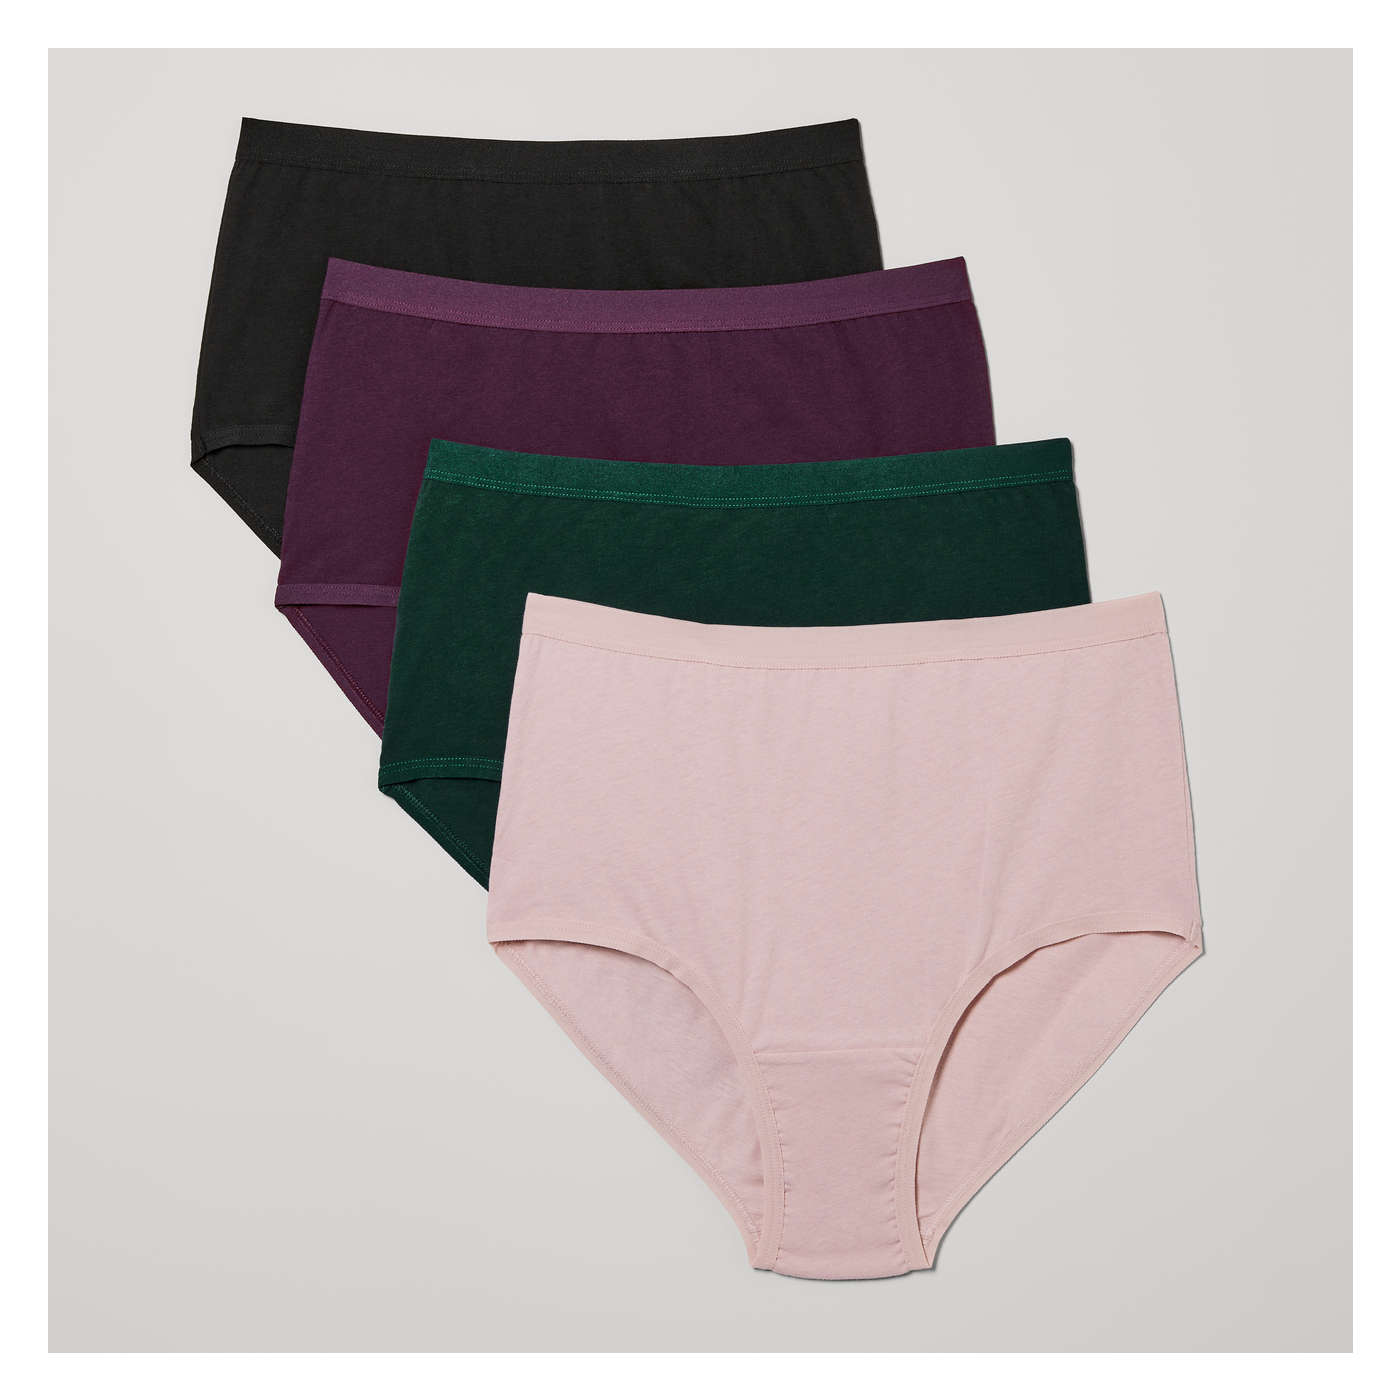 4 Underwear Briefs Woman Underwear Stretch Cotton Hypoallergenic Soft Basic